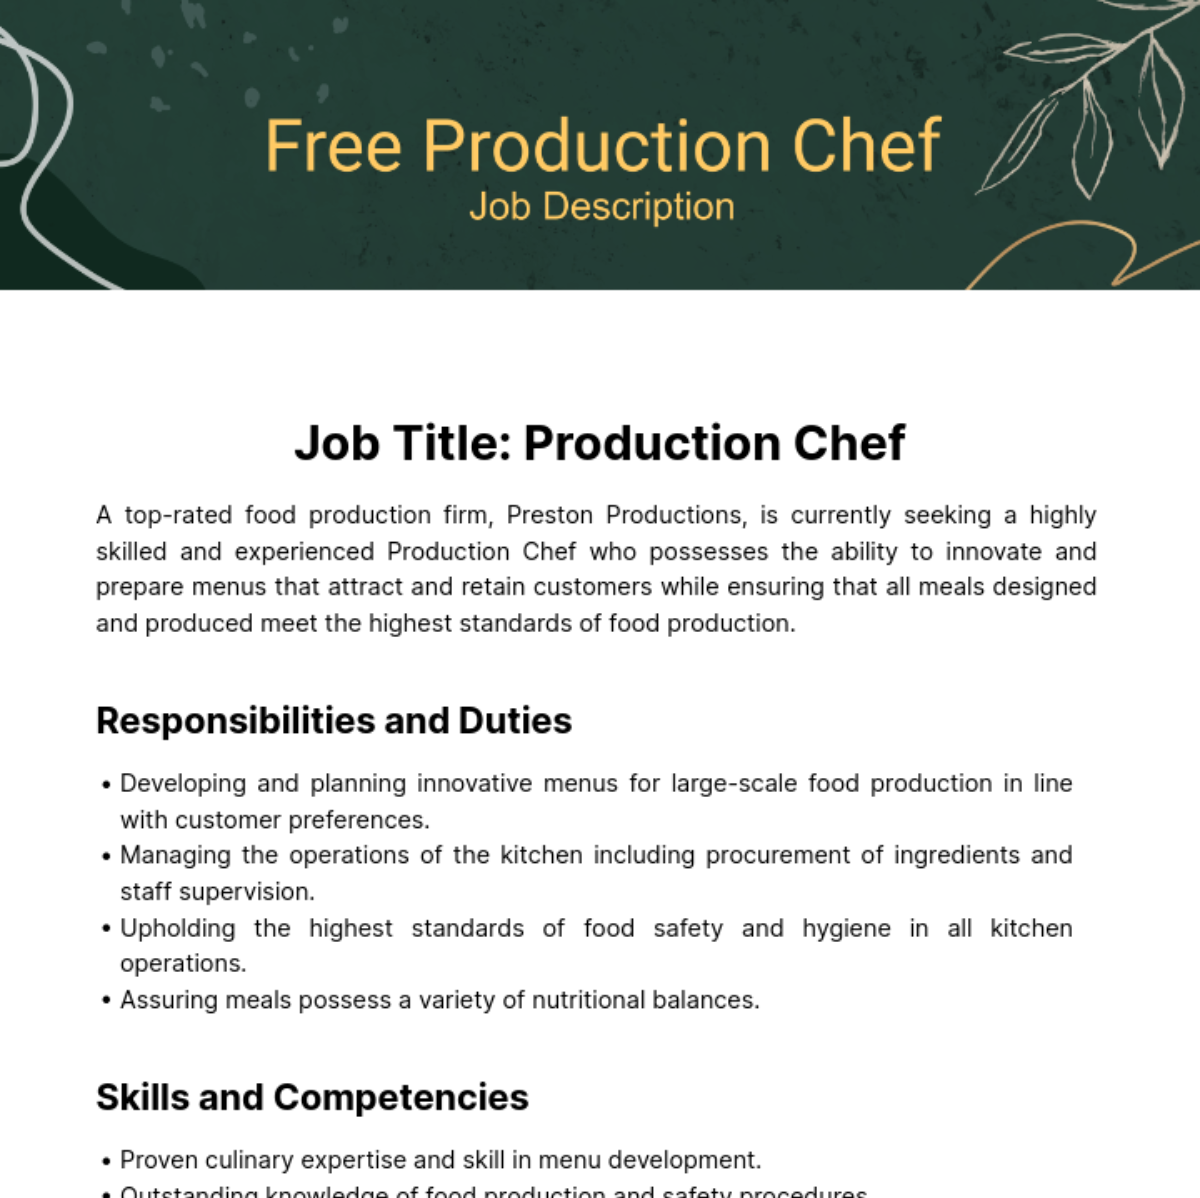 Free Production Chef Job Description Template